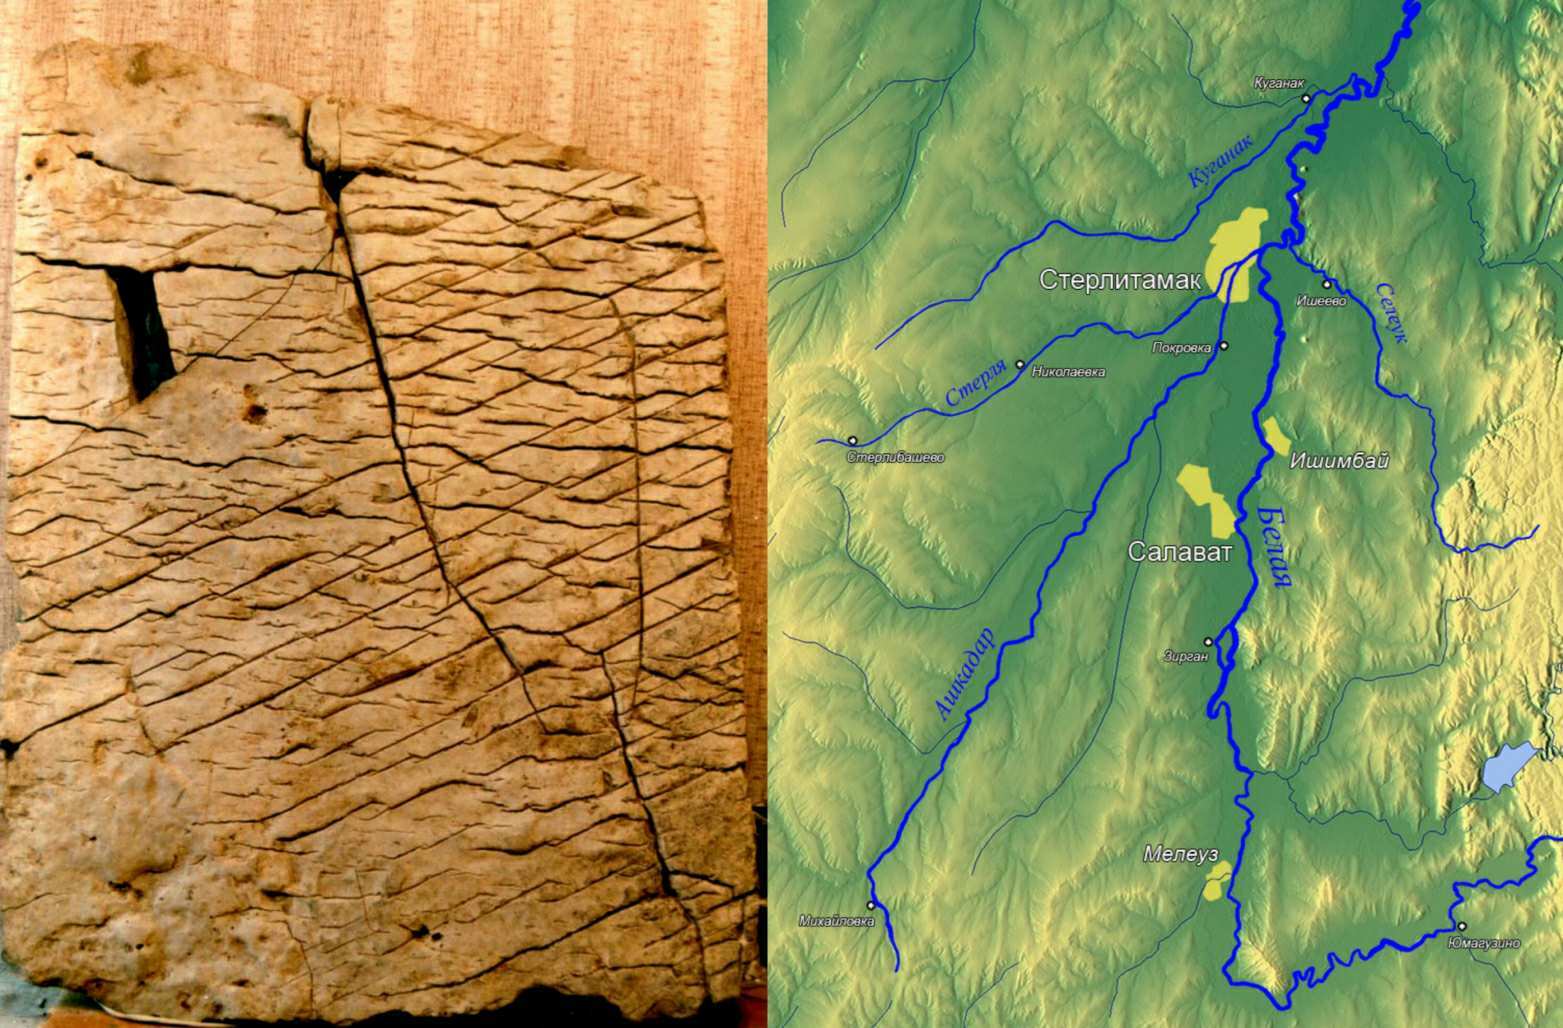 la tablette semble montrer une carte topographique très précise de la Bachkirie, une zone spécifique des montagnes de l'Oural, à une échelle d'environ 1:1.1 km